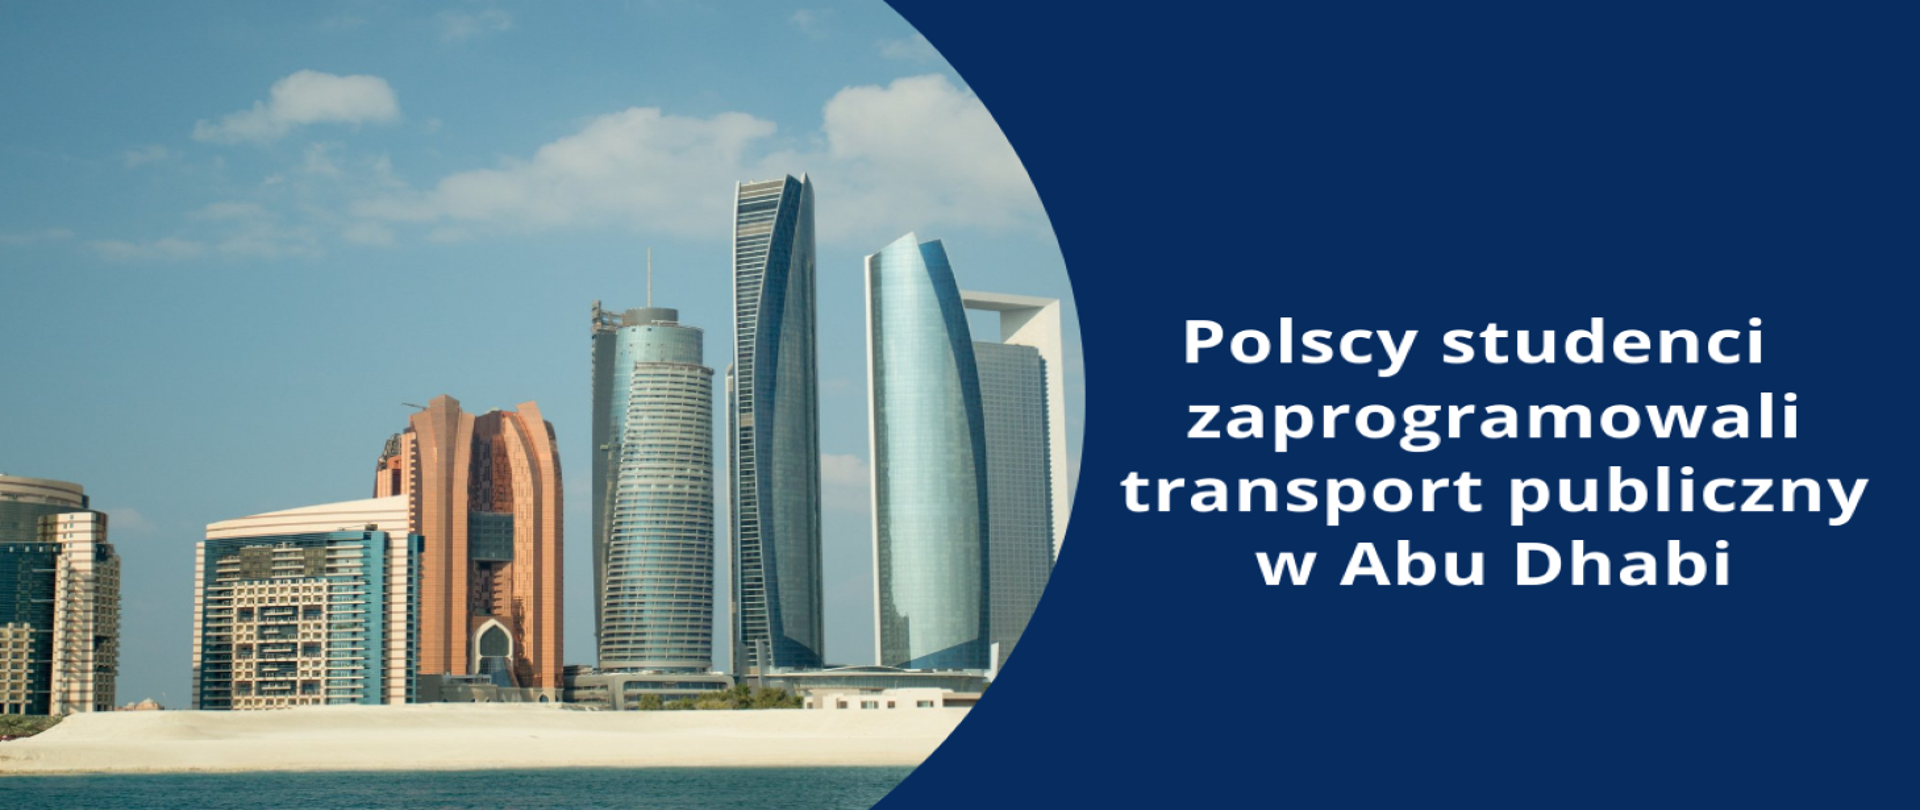 Zdjęcie wieżowców w Abu Dhabi. Po prawej stronie na granatowym tle z napisem Polscy studenci zaprogramowali transport publiczny w Abu Dhabi. Zdjęcie odcięte jest łukiem od napisu.